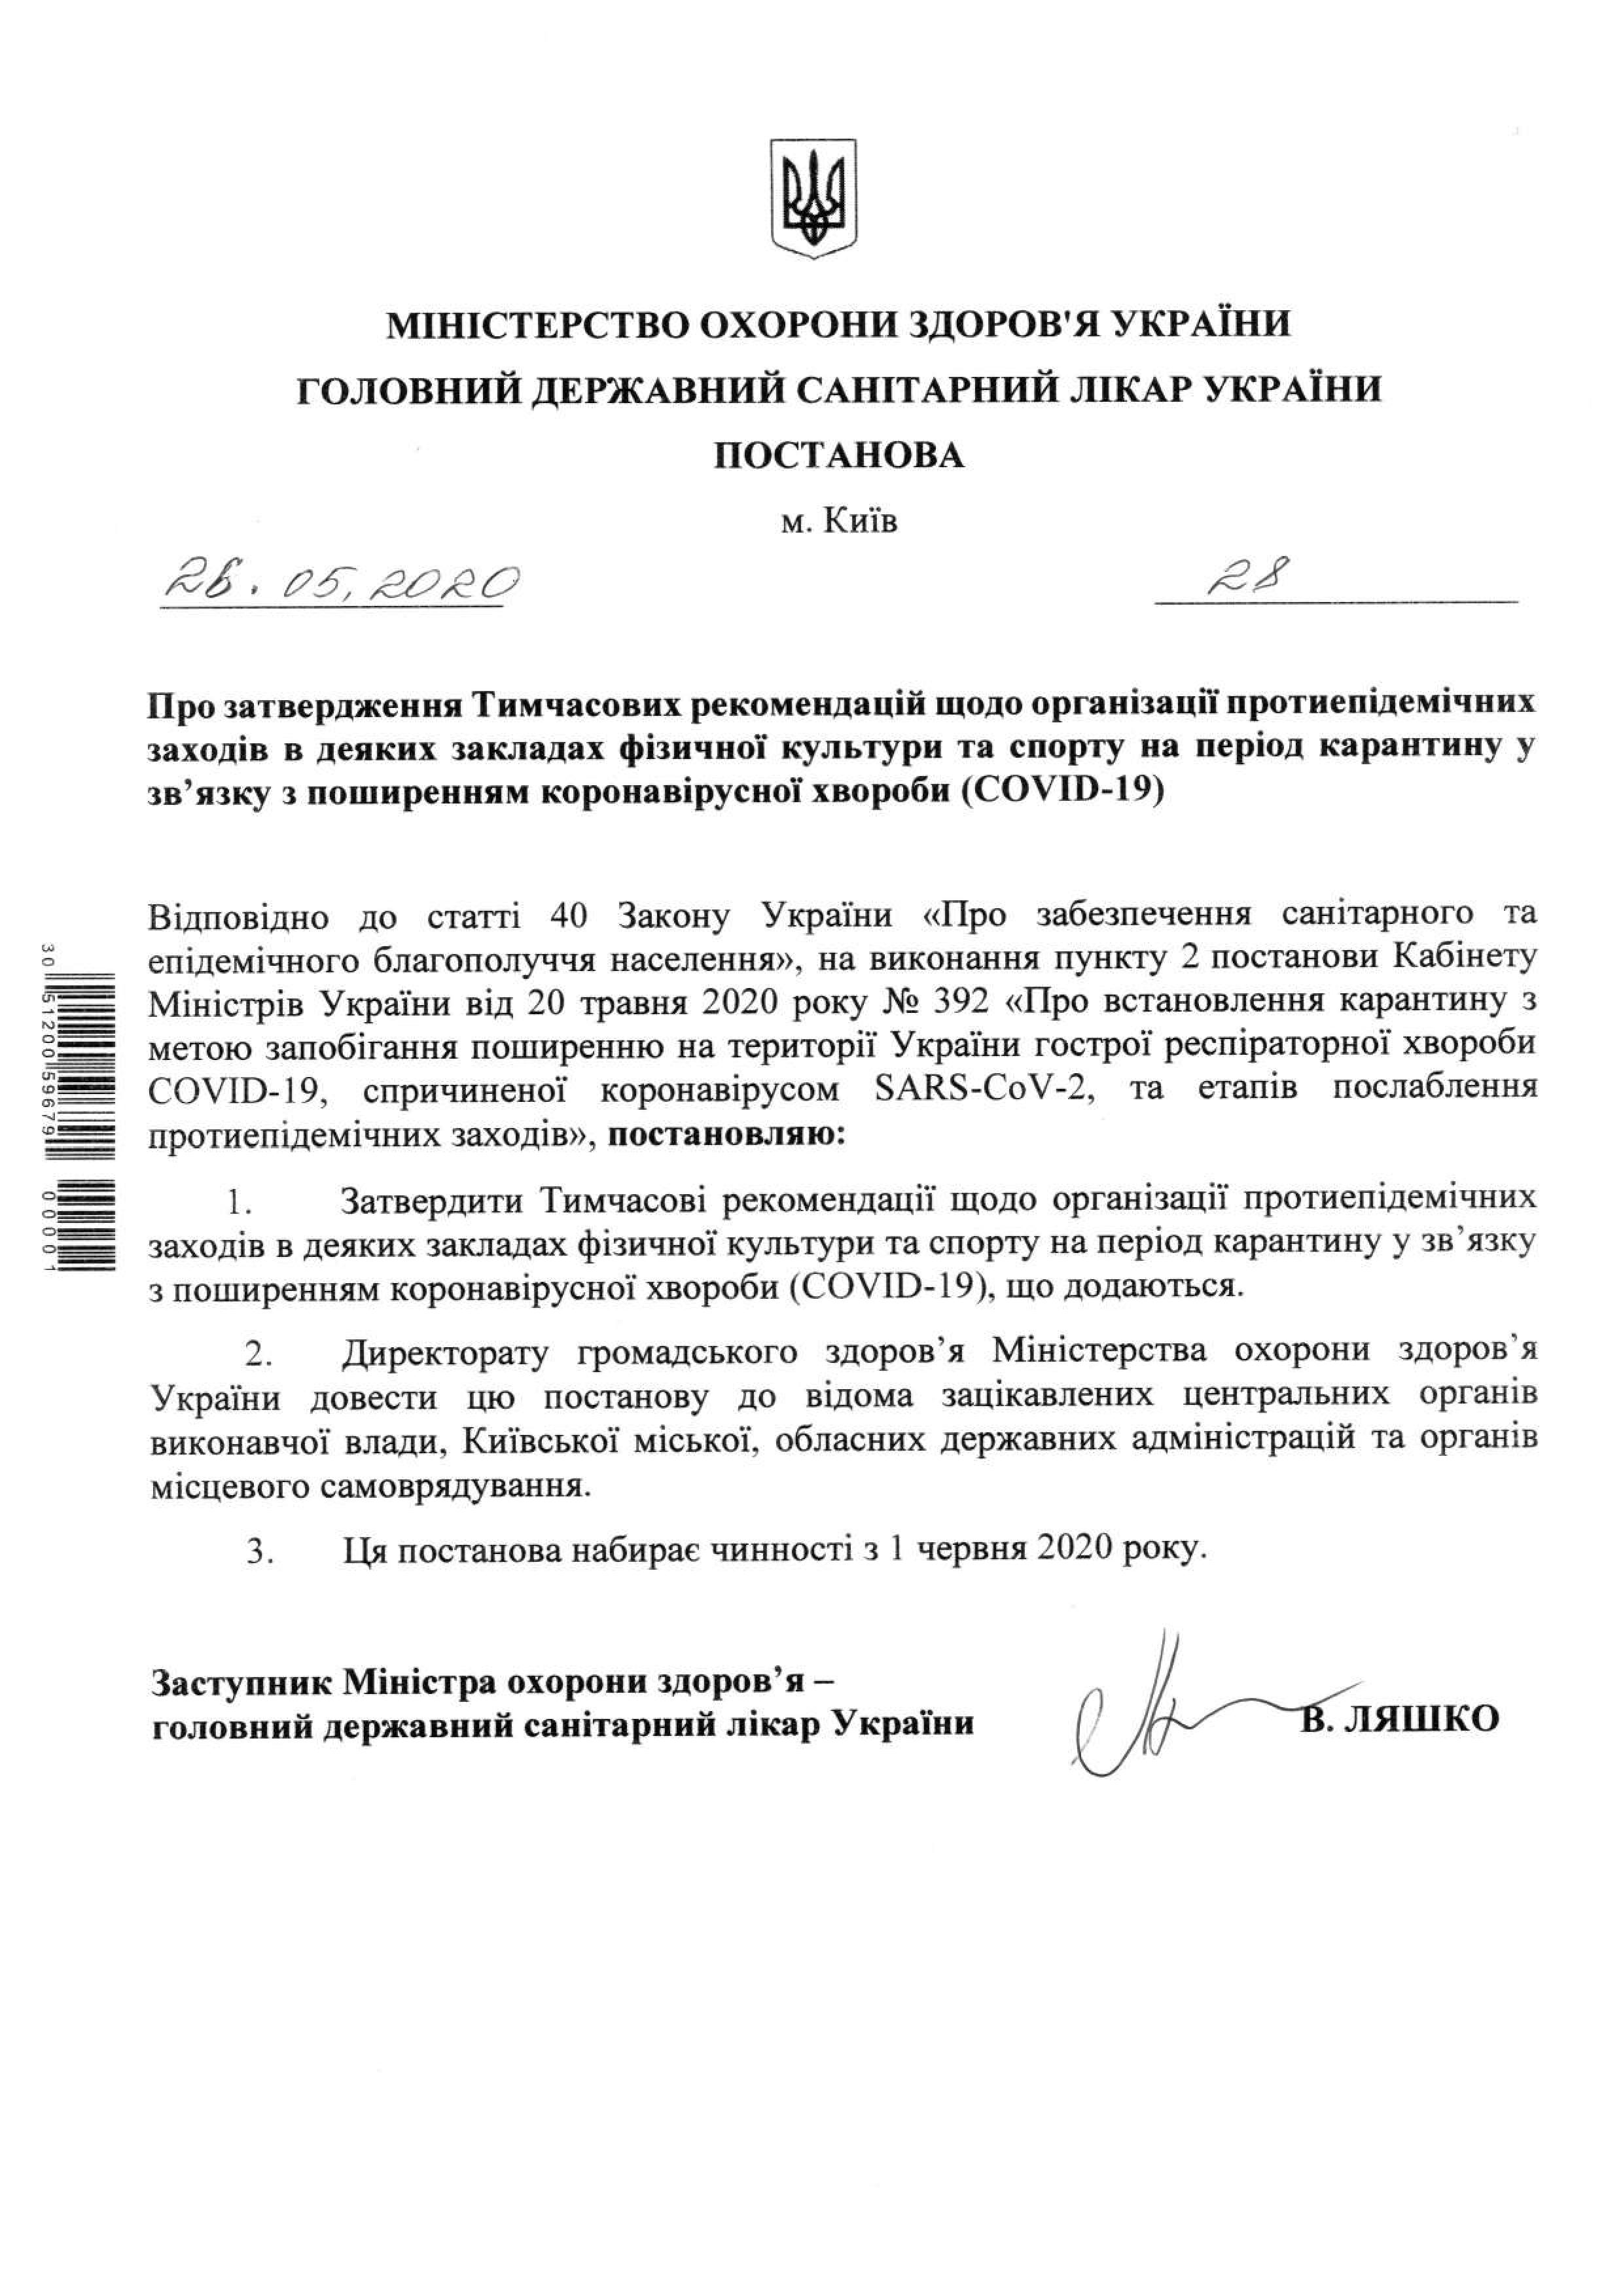 Как будут работать спортзалы с 1 июня. Постановление санврача: moz.gov.ua